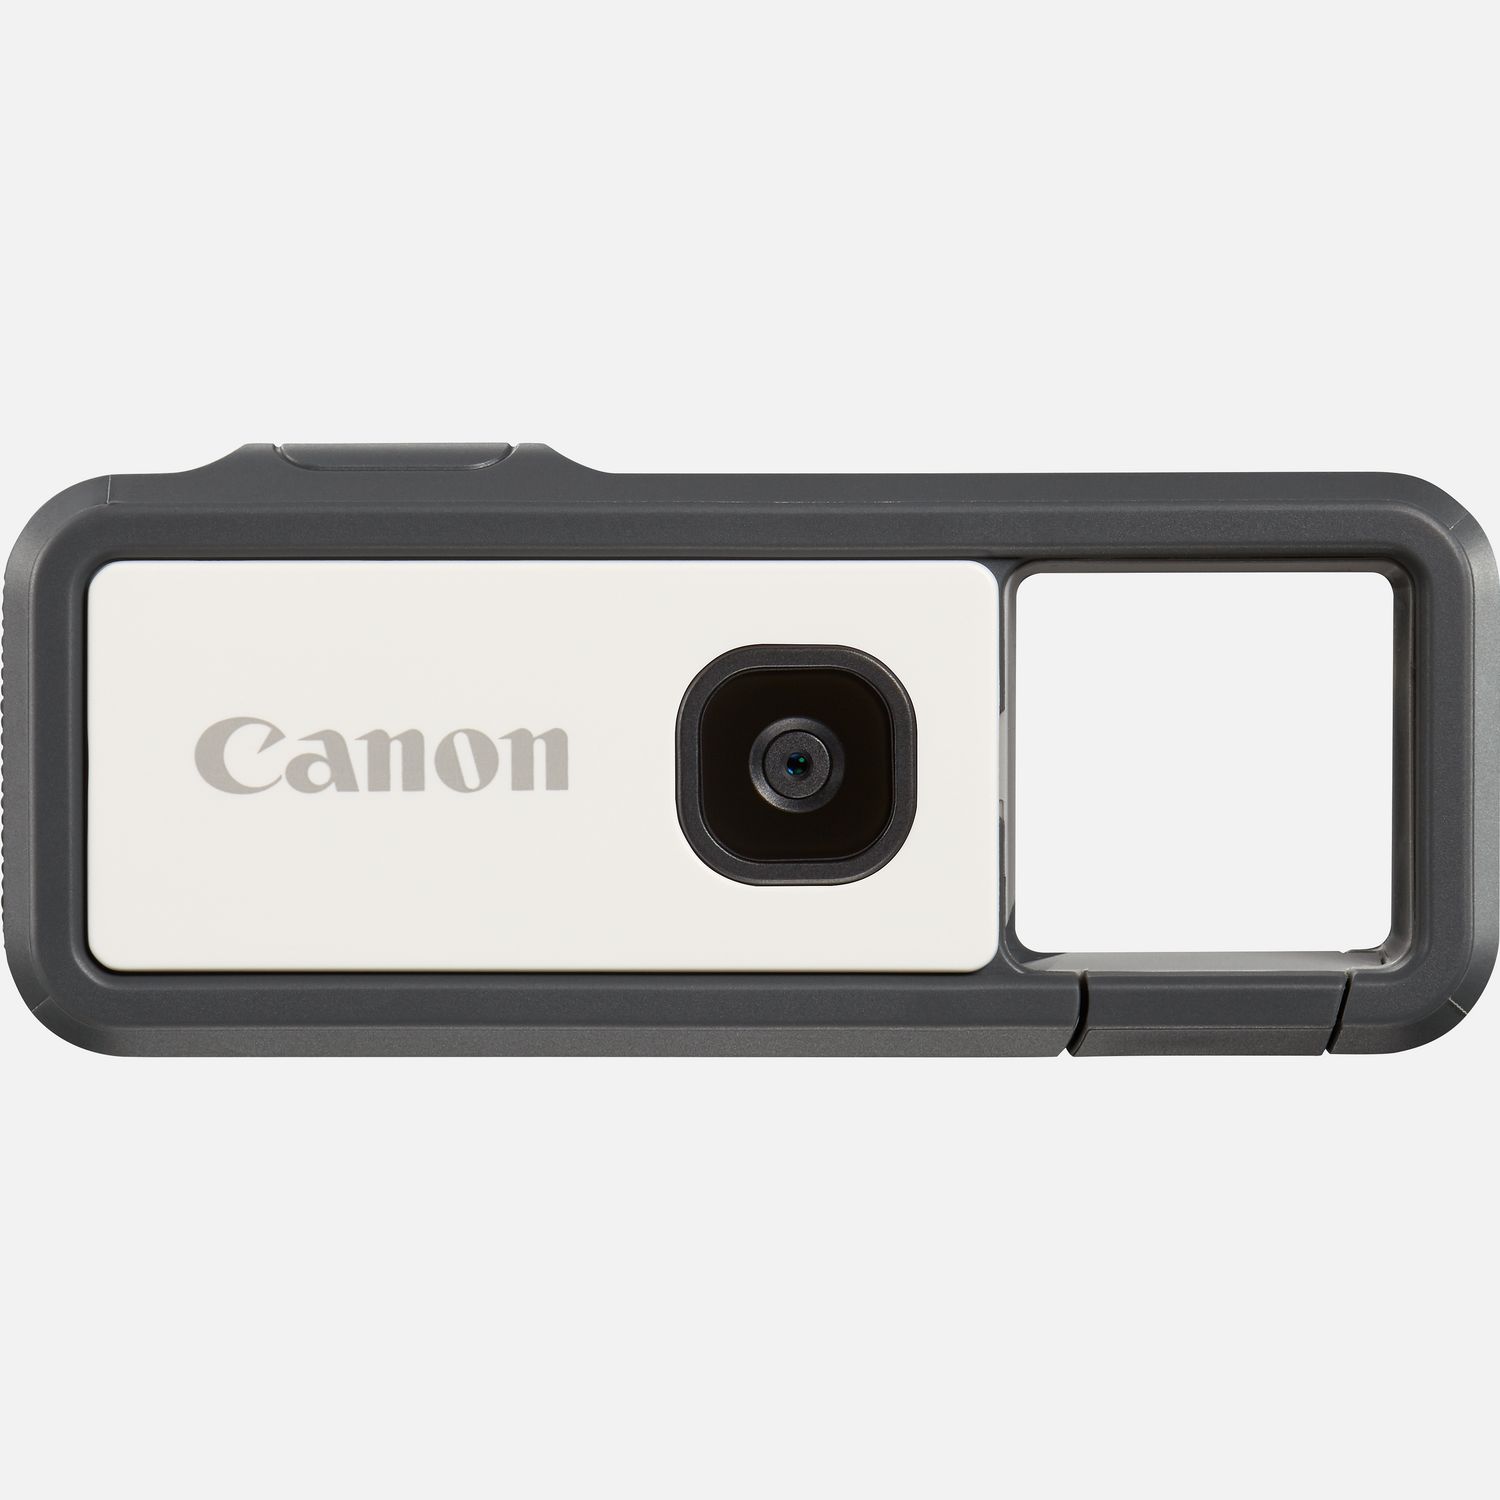 Mit der Canon IVY REC, die speziell fr deinen Outdoor-Spa entwickelt wurde, kannst du alle deine Abenteuer festhalten. Diese Kamera ohne Display ist wasserdicht*, stofest**, kabellos verbunden und tragbar  zudem ist sie zuverlssig und macht viel Spa! Und da sie kein Display hat, kann auch nichts kaputt gehen, damit du dich auf das konzentrieren kannst, was zhlt: deinen Spa. Wenn du fertig mit dem Aufnehmen bist, kannst du die Bilder und Videos ber die Canon Mini Cam App ganz einfach auf dein Smartphone bertragen. Sie ist in vier Trendfarben erhltlich  Blau, Pink, Grn und Grau , so dass die Canon IVY REC perfekt zu deinem Lifestyle passt.  Vorteile      Mit der Canon IVY REC kannst du berall fotografieren und filmen. Das stofeste** und wasserdichte* Design macht sie ideal zum Fotografieren und Filmen unterwegs. Einfach am Wahlrad drehen und schon kannst du Fotos oder Videos aufnehmen          Die Canon IVY REC ist stofest** und hlt einiges aus. Zudem nimmt sie ca. 1.000 Fotos oder 60 Minuten an 1.080p 60 B/s Videos mit nur einer Ladung des integrierten 660 mAh (3,8 V) Lithium-Ionen Akkus auf.          Die Canon IVY REC hat kein Display  so kann auch keins kaputt gehen. Sie ist bei einem Gewicht von ca. 90 Gramm sehr leicht und hat sogar einen Stativsockel, mit dem du sie berall stabil positionieren kannst.          Die Canon IVY REC wurde entwickelt, um sie mit einem Clip an einem Grtel oder Rucksack zu befestigen, der gleichzeitig als Sucher dient. So ist sie immer und berall sicher dabei und sofort einsatzbereit, wenn auf den Auslser drckst.          Mit ihrem festintegrierten Objektiv mit Lichtstrke 1:2,2 bietet sie einen 78-Bildwinkel. So kann die Canon IVY REC jede Menge Details aufnehmen und deine Abenteuer przise festhalten.          Der hochwertige CMOS-Sensor mit 13 Megapixeln sorgt fr einen enormen Detailreichtum, geringes Bildrauschen und tolle Farben          Du kannst tolle Videos von deinen Abenteuern in Full HD mit 1.920 x 1.080 Pixeln und bis zu 60 B/s aufnehmen und auf eine microSD/microSDHC/microSDXC Karte speichern (nicht im Lieferumfang)          Speziell fr die Canon IVY REC gibt es die Canon Mini Cam App*** fr dein kompatibles Mobilgert, das du dann fr die Livebildansicht oder als kabellosen Auslser verwenden kannst und auf das du deine Aufnahmen bertragen und mit der ganzen Welt teilen kannst          Lieferumfang       Canon IVY REC Grau         USB-Kabel         Kurzanleitungen und andere Dokumentationen         Garantiekarte              Technische Daten              Wasserdicht*                Leicht & mit Clip zum Befestigen                13 MP 1/3-Zoll-Typ CMOS-Sensor                Stofest**                WLAN-Konnektivitt                Ideal fr drauen                1.080p Full HD-Video mit bis zu 60 B/s                Canon Mini Cam App***                Bluetooth          Alle technischen Daten zeigen                              Preise und Auszeichnungen                                                                                                                            .